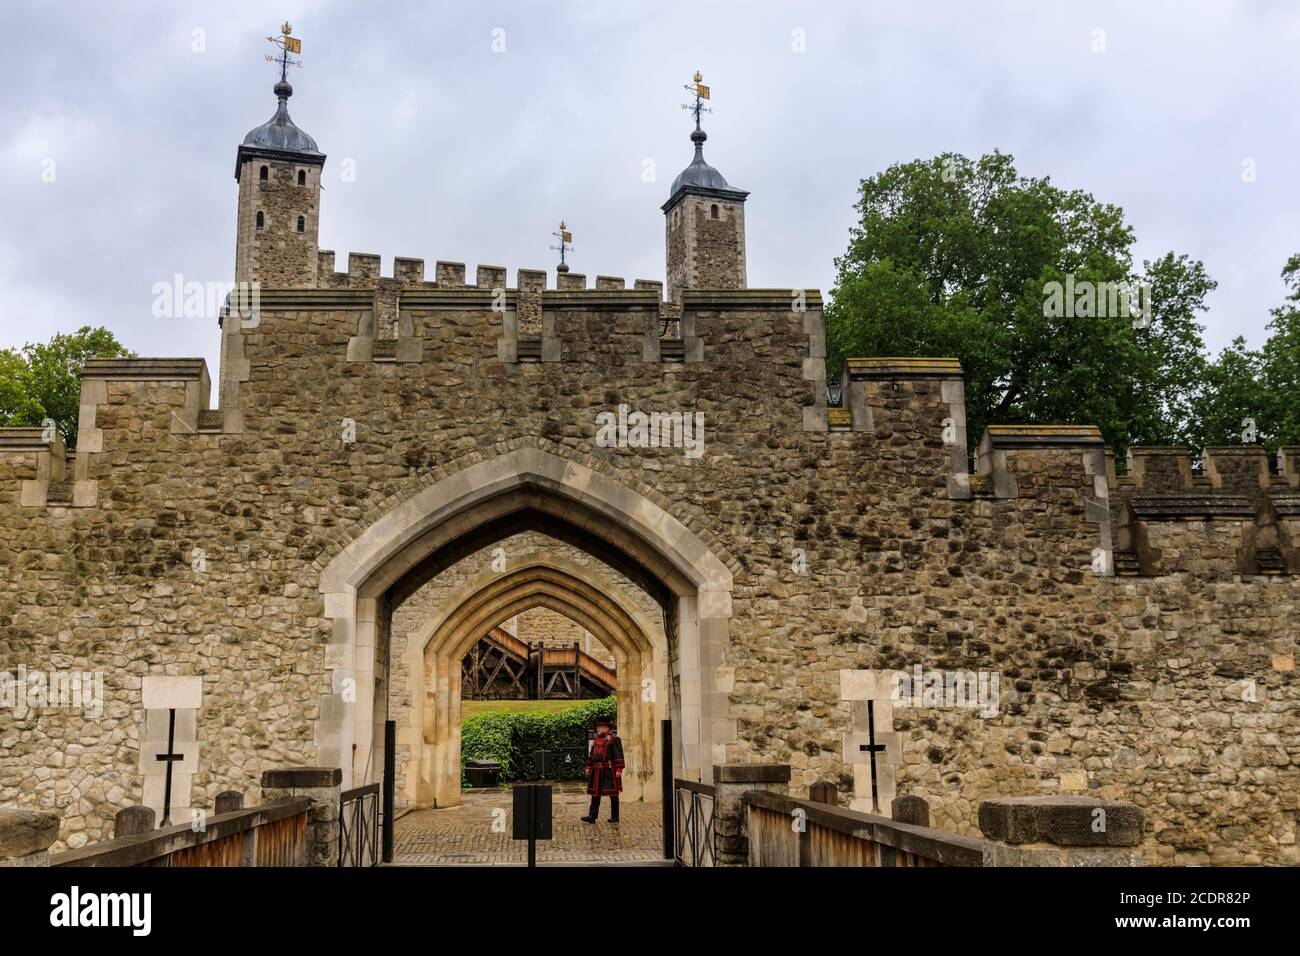 Torre de Londres, Palacio Real de su Majestad y Fortaleza de la Torre de Londres, Londres, Reino Unido Foto de stock